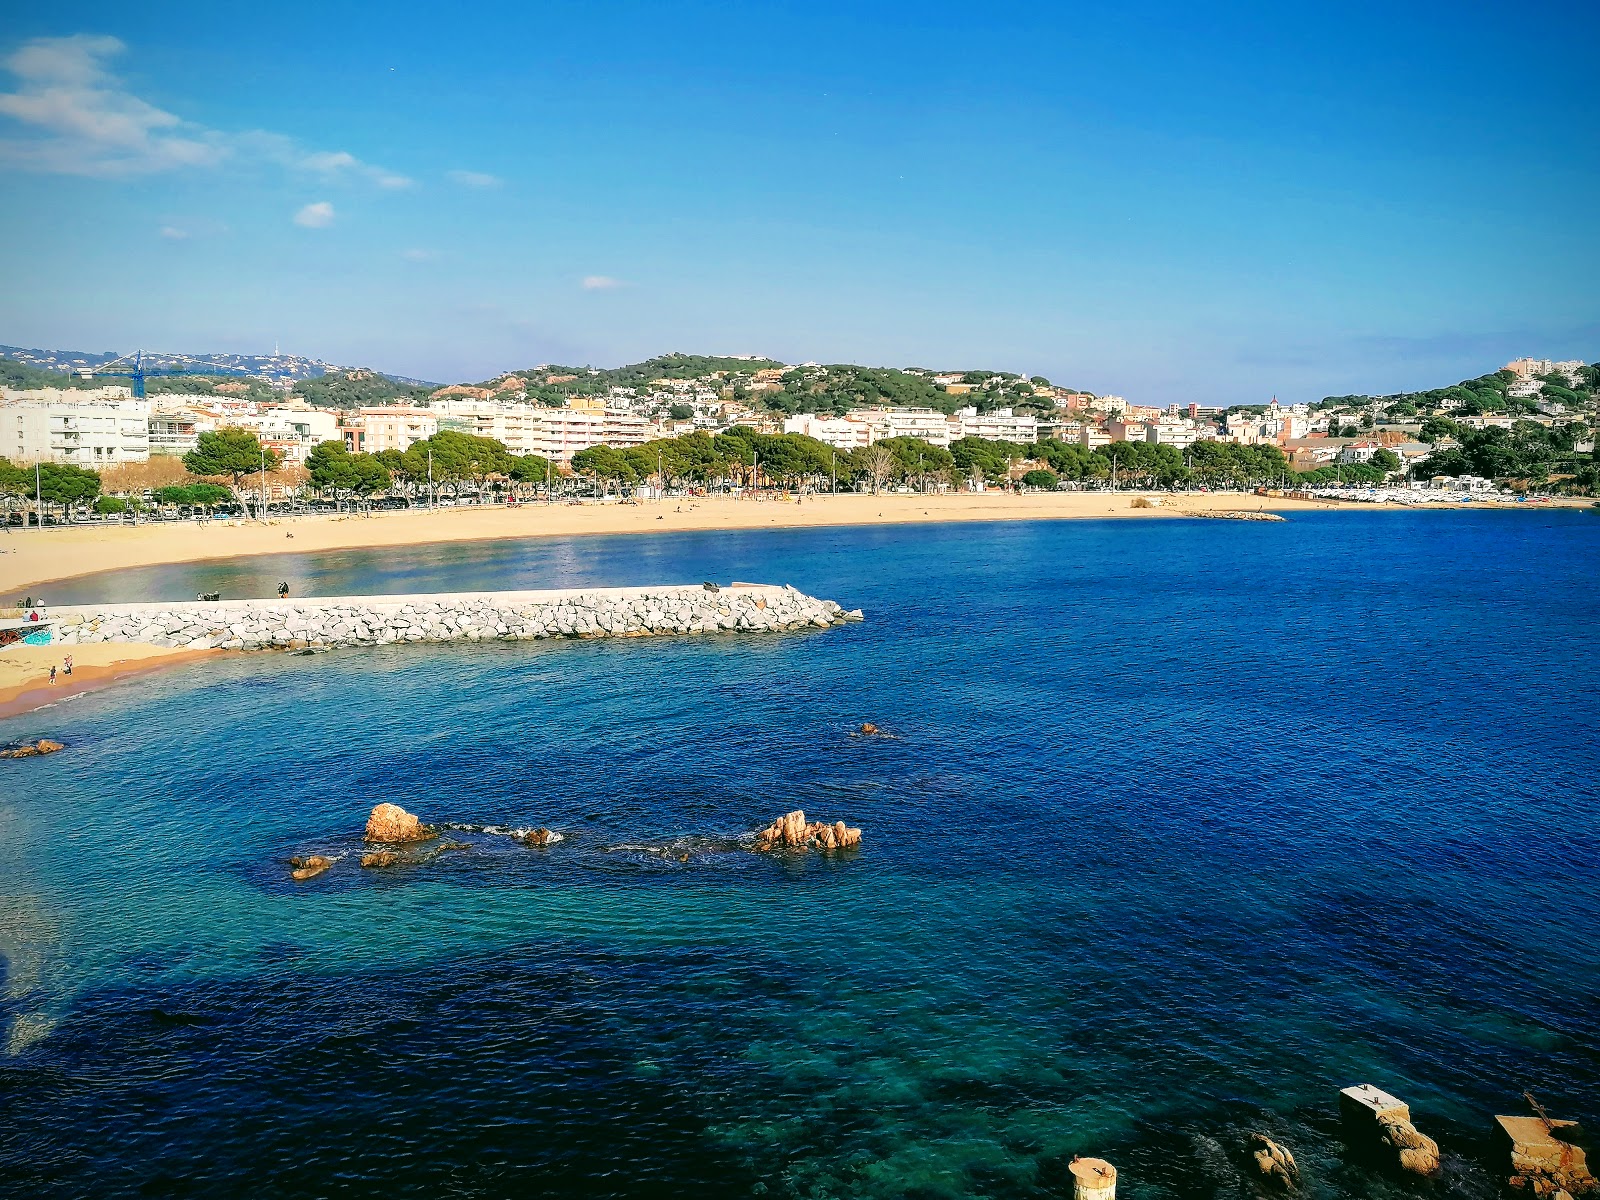 Valokuva Playa de Sant Feliuista. pinnalla kirkas simpukkahiekka:n kanssa